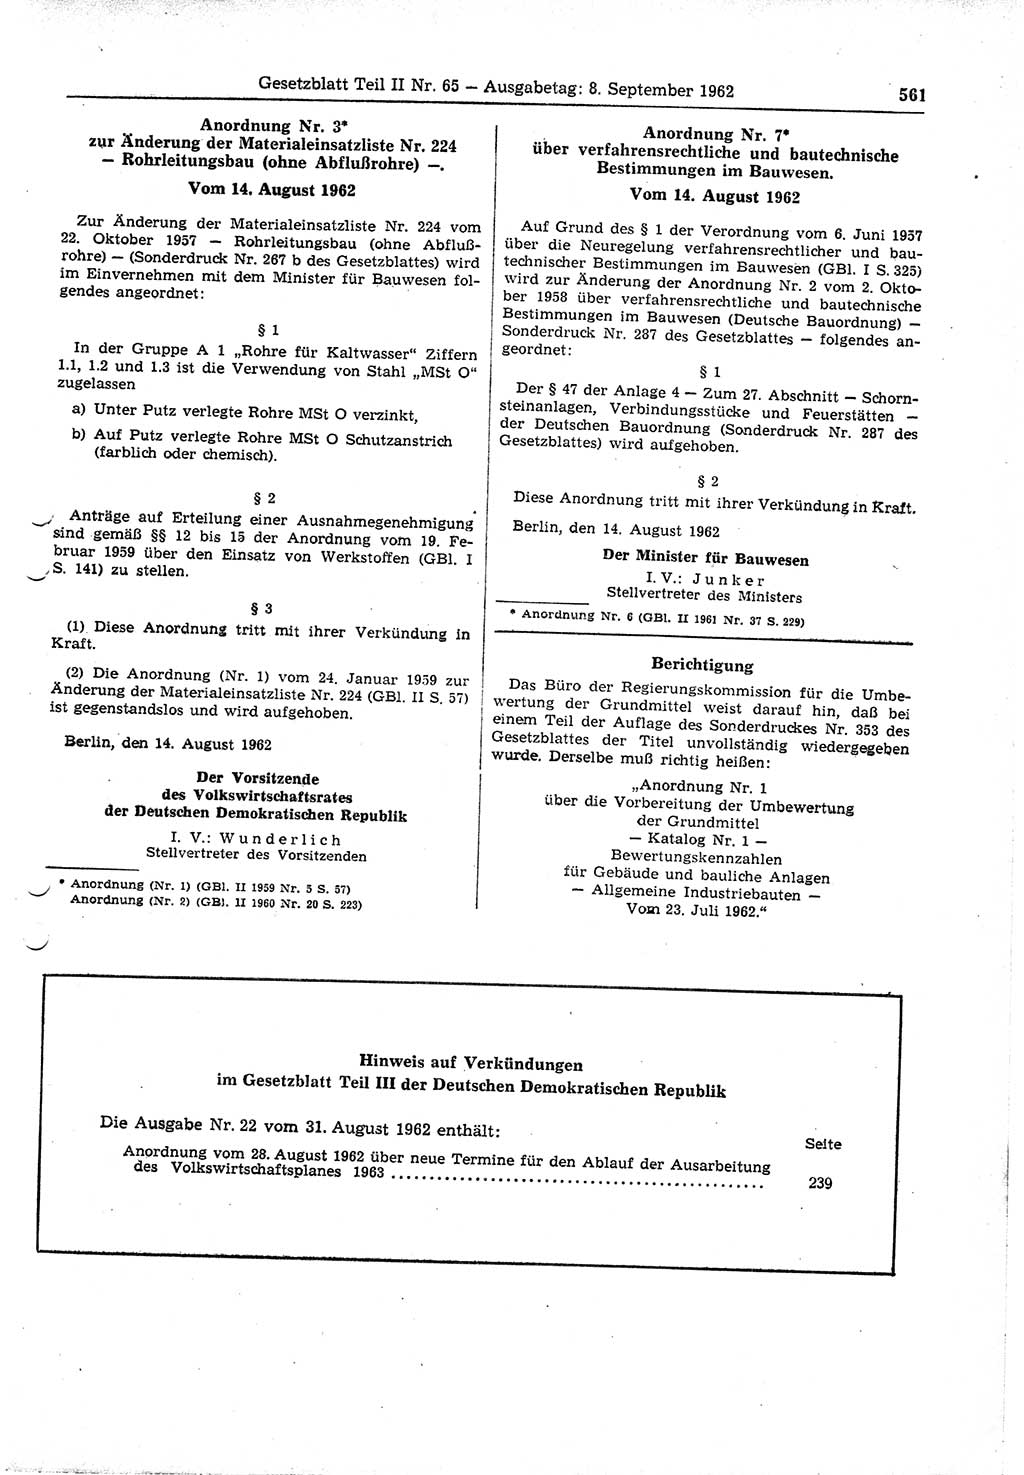 Gesetzblatt (GBl.) der Deutschen Demokratischen Republik (DDR) Teil ⅠⅠ 1962, Seite 561 (GBl. DDR ⅠⅠ 1962, S. 561)